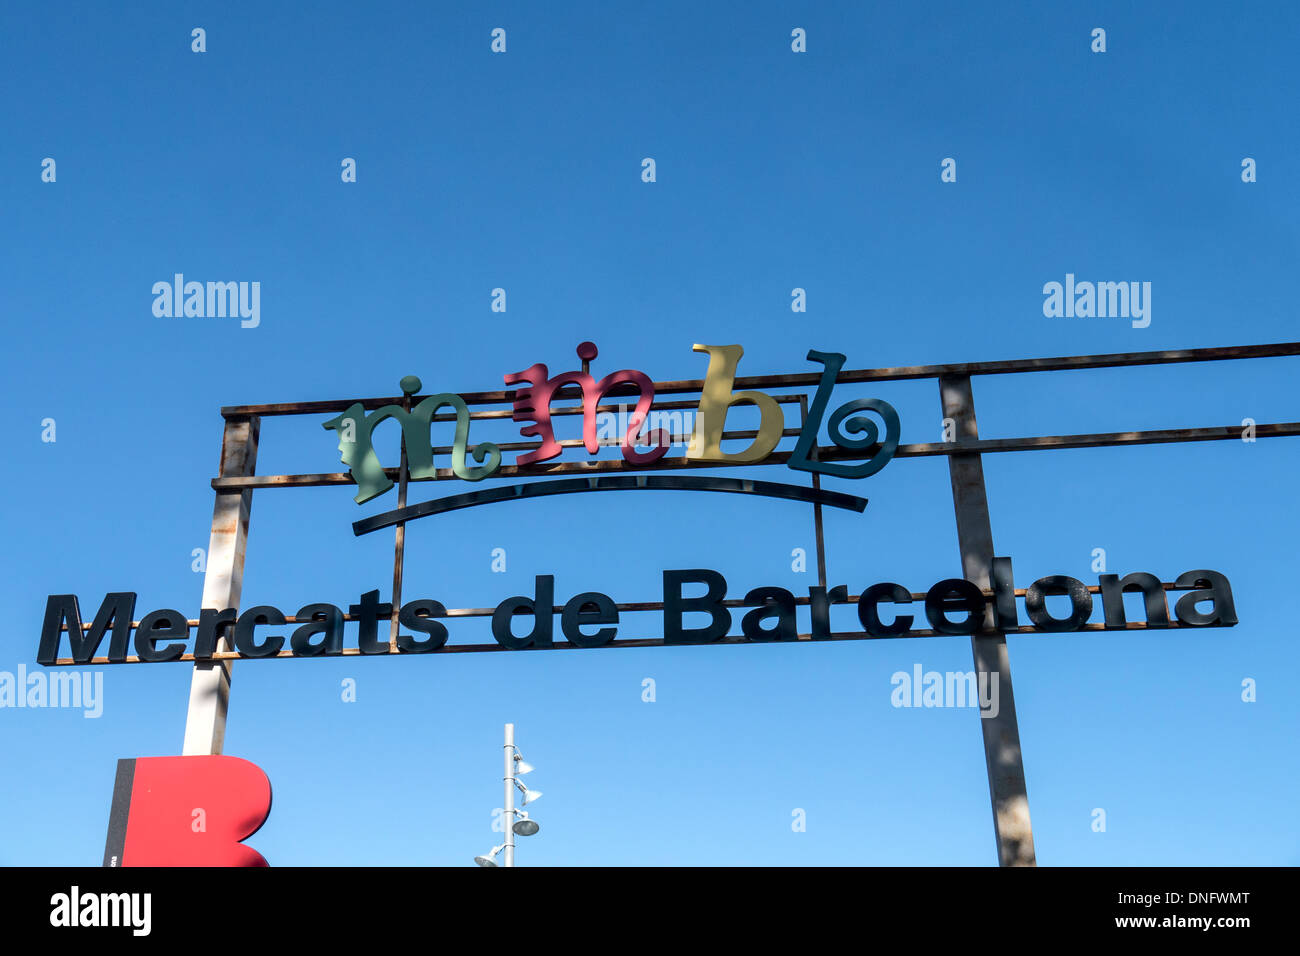 BARCELONE, ESPAGNE - 13 SEPTEMBRE 2013 : panneau au-dessus de l'entrée du Mercat Fira de Bellcaire - plus grand marché aux puces et aux antiquités de Barcelone Banque D'Images